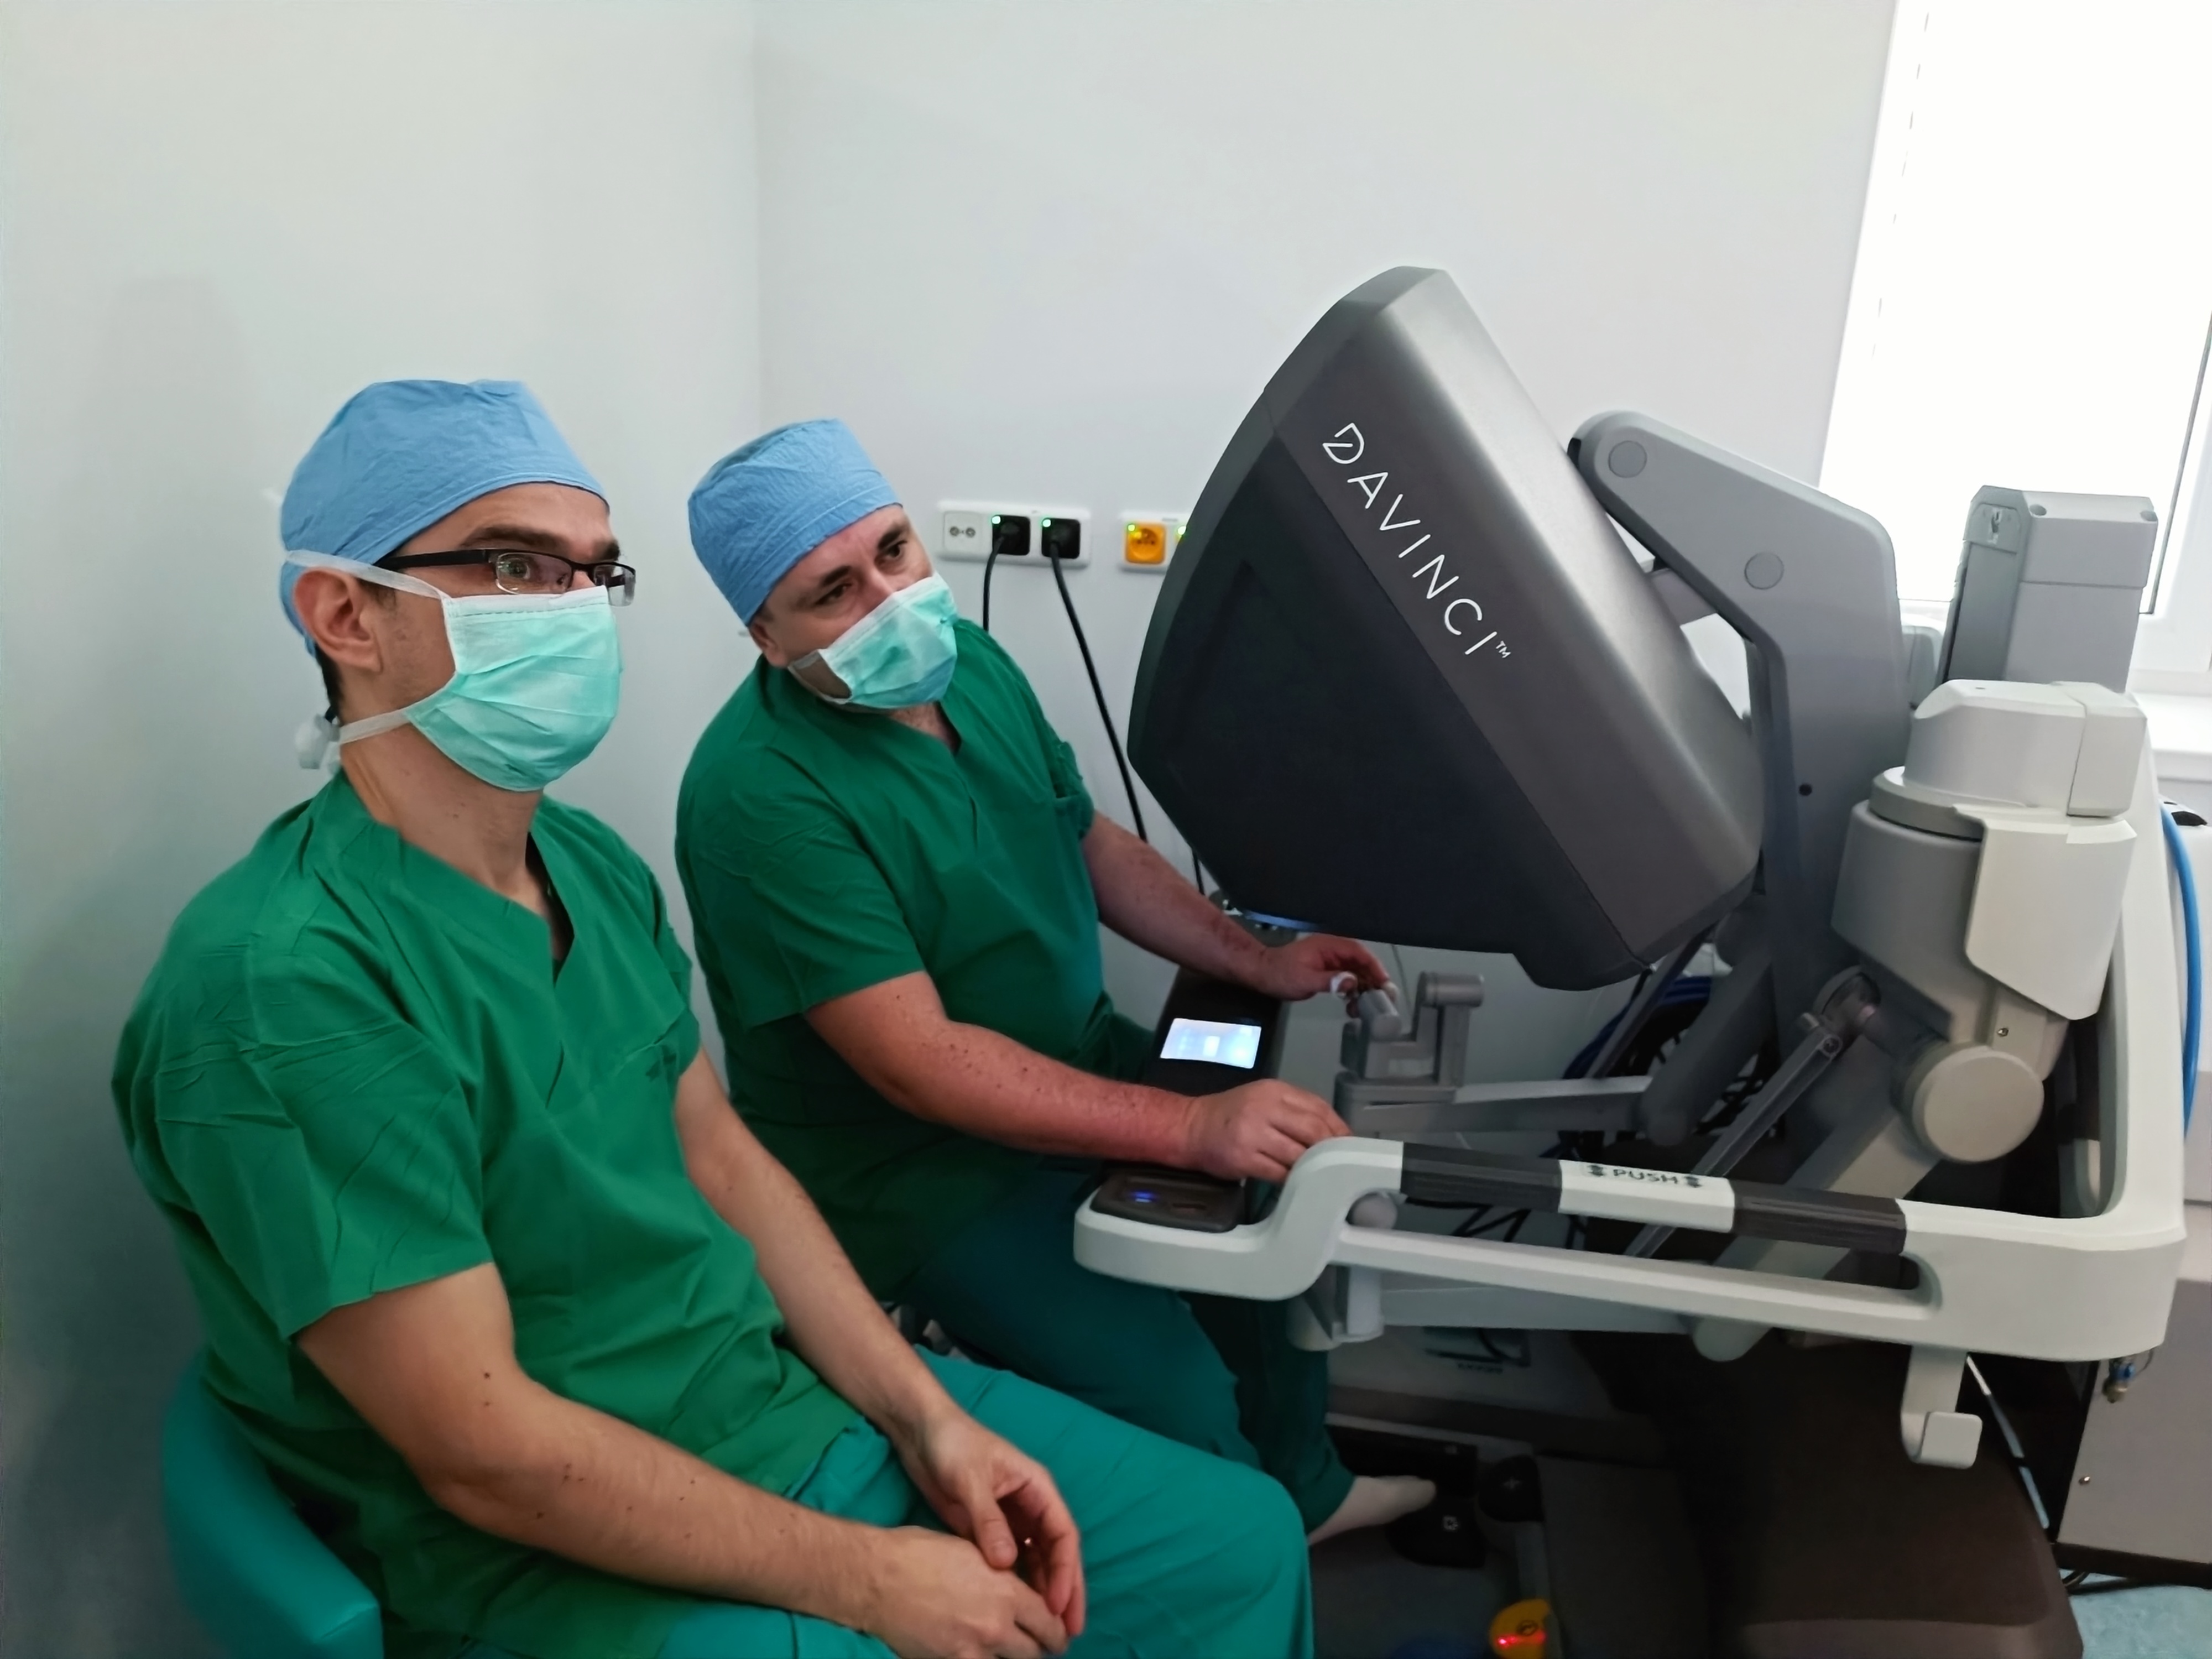 UNM spustila robotické operácie na hrudníku ako prvá nemocnica na Slovensku